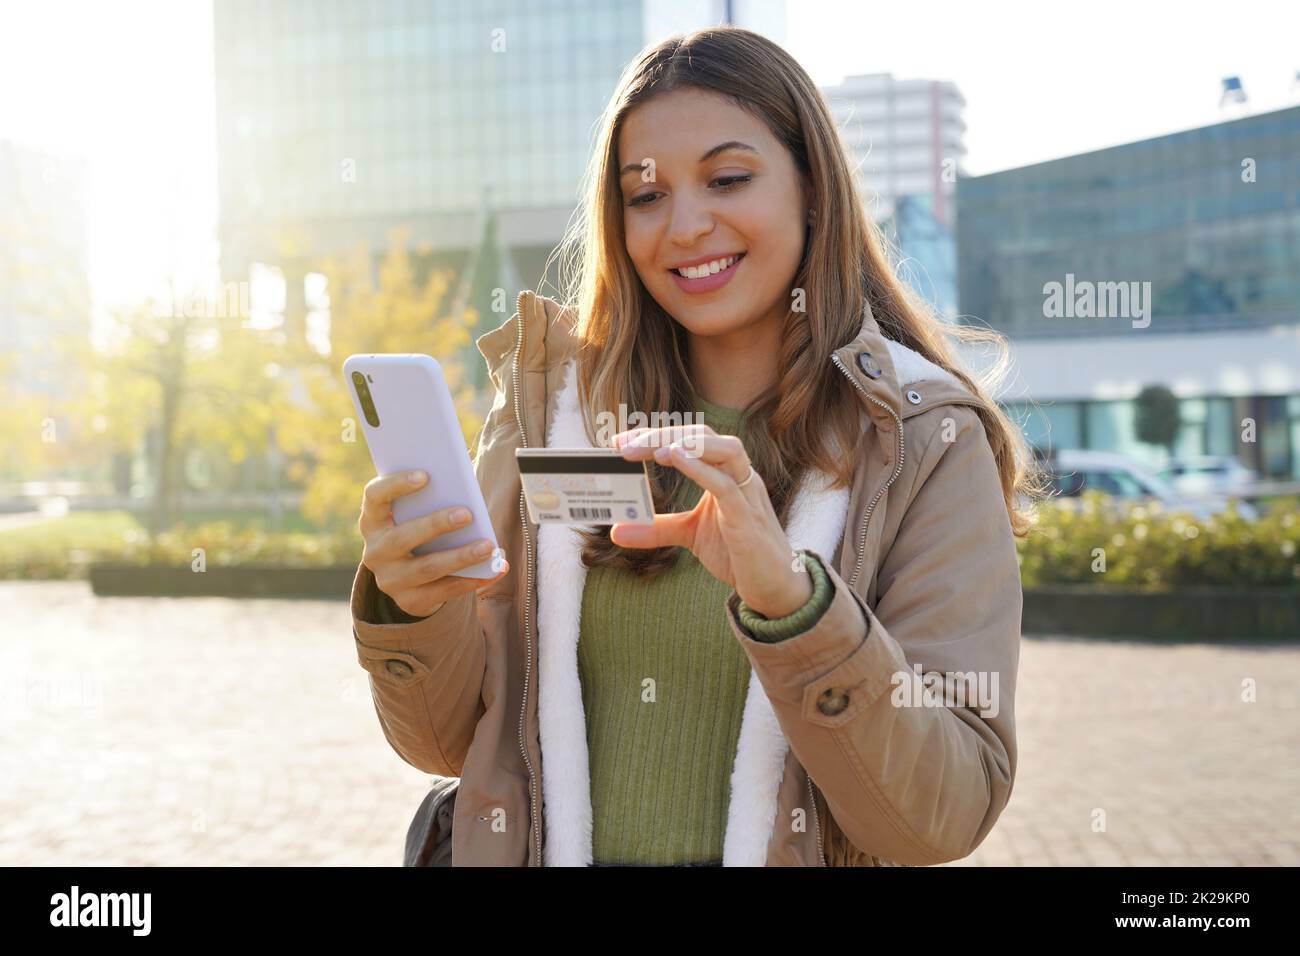 Portrait de la jeune femme en tapant le numéro de carte de crédit sur le téléphone mobile facilite l'achat en ligne dans la rue de la ville Banque D'Images